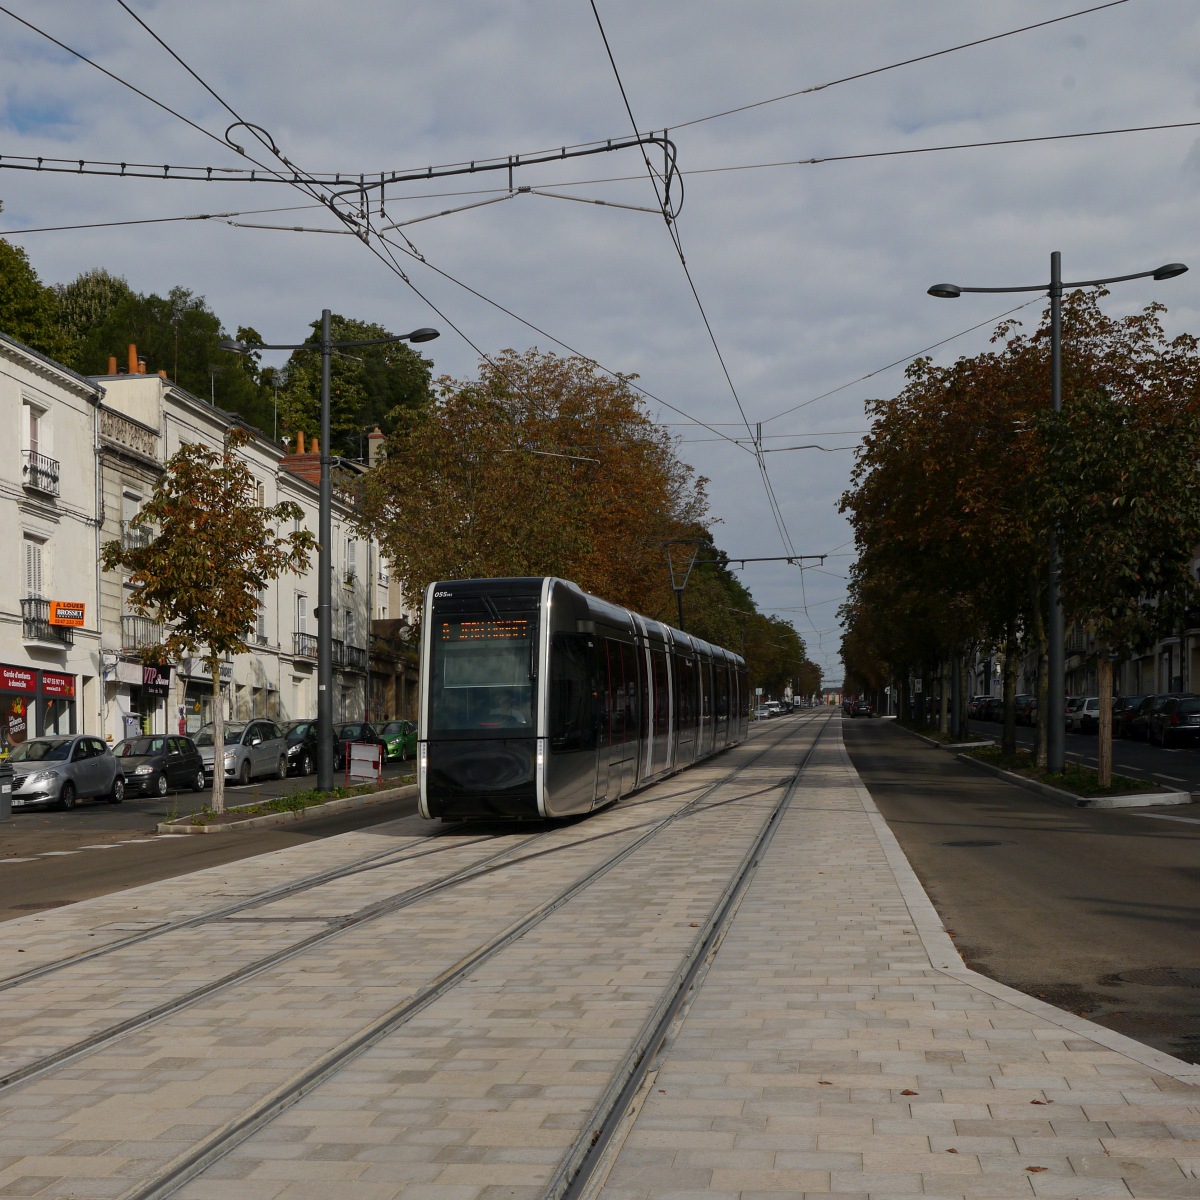 Tram FilBleu-055 fährt auf der Avenue de la Tranchée unter Fahrleitung zum Place-Choiseul, wo der Übergang zur unteridischen Stromversorgung mit dem System APS in der Innenstadt erfolgen wird.

2014-09-20 Tours